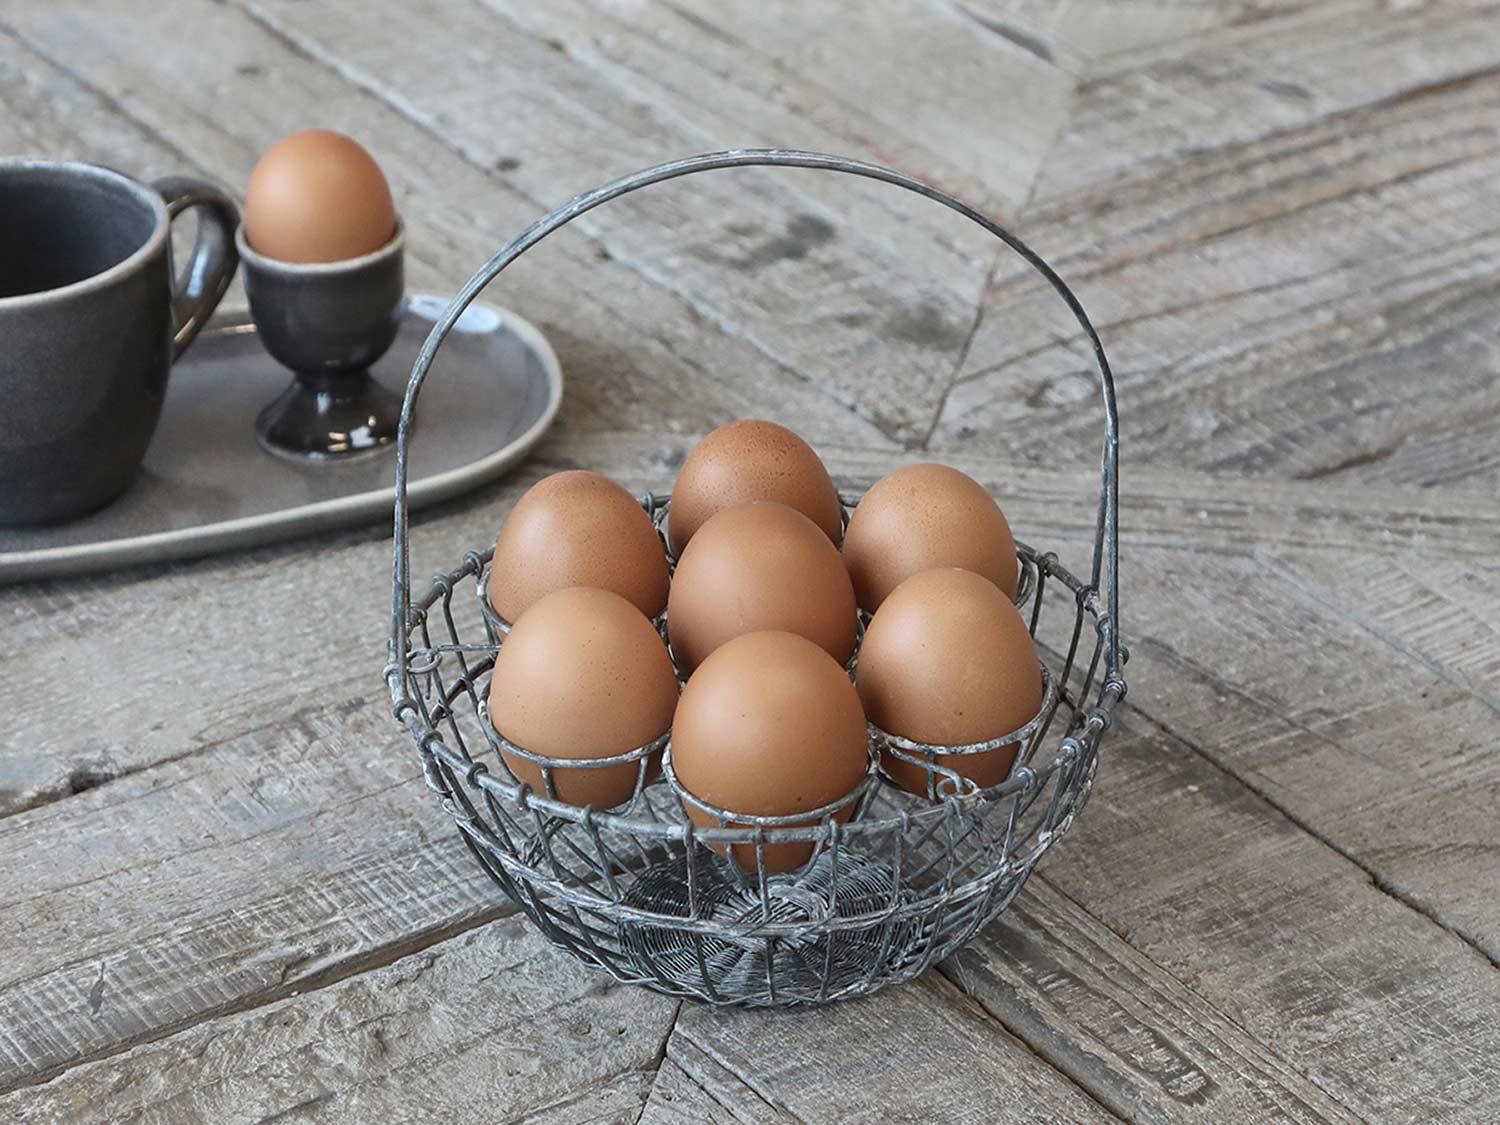 7 tojás tárolására alkalmas, antikolt szürke színű, fém tojástartó kosár.